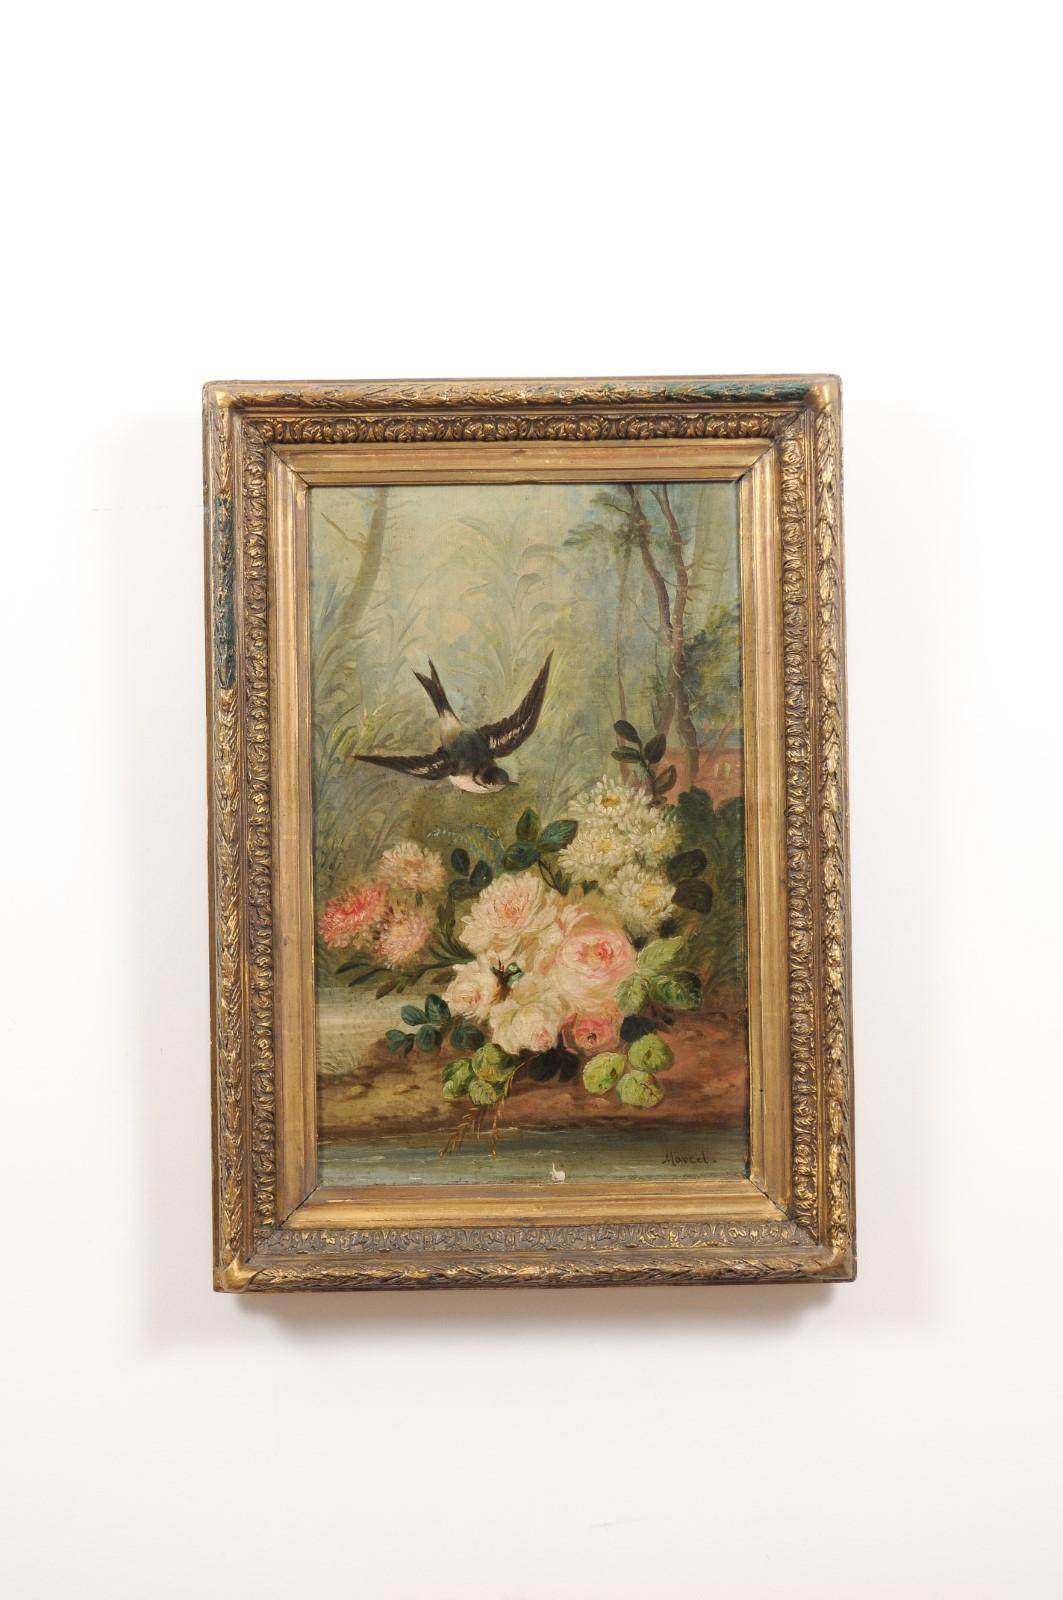 Ein französisches Ölgemälde auf Leinwand aus der Zeit Napoleons III. aus der Mitte des 19. Jahrhunderts mit Vogel und Rosen in einem Rahmen aus Goldholz. Dieses Ölgemälde auf Leinwand, das zu Beginn der Herrschaft von Kaiser Napoléon III. in